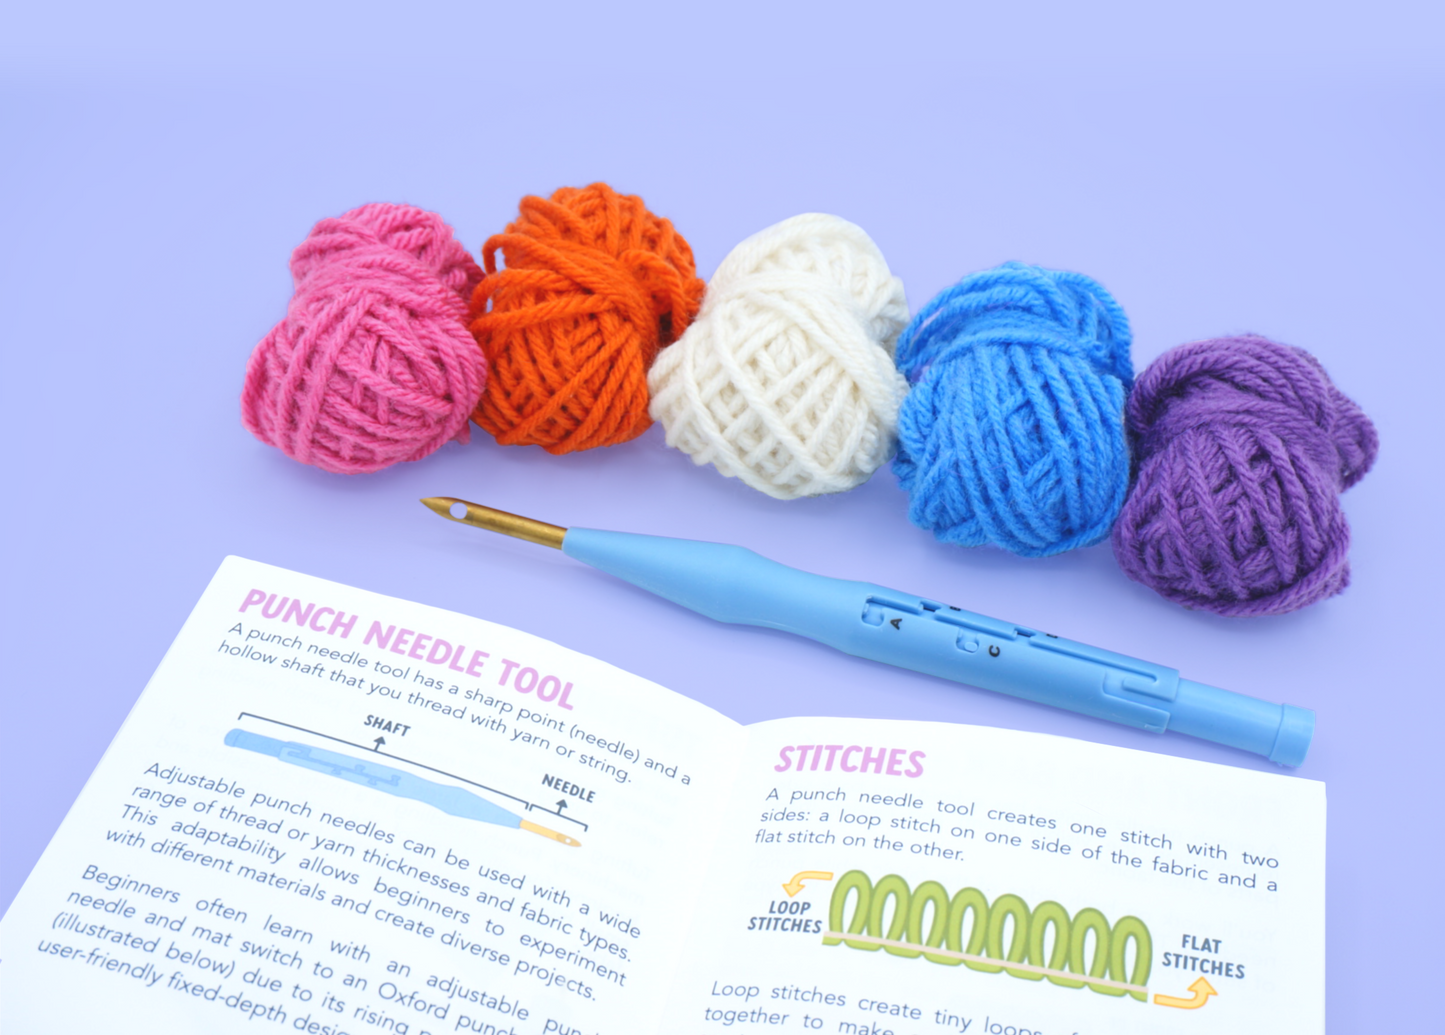 Punch Needle Kit for Beginner, Beginner Punch Needle Kit With